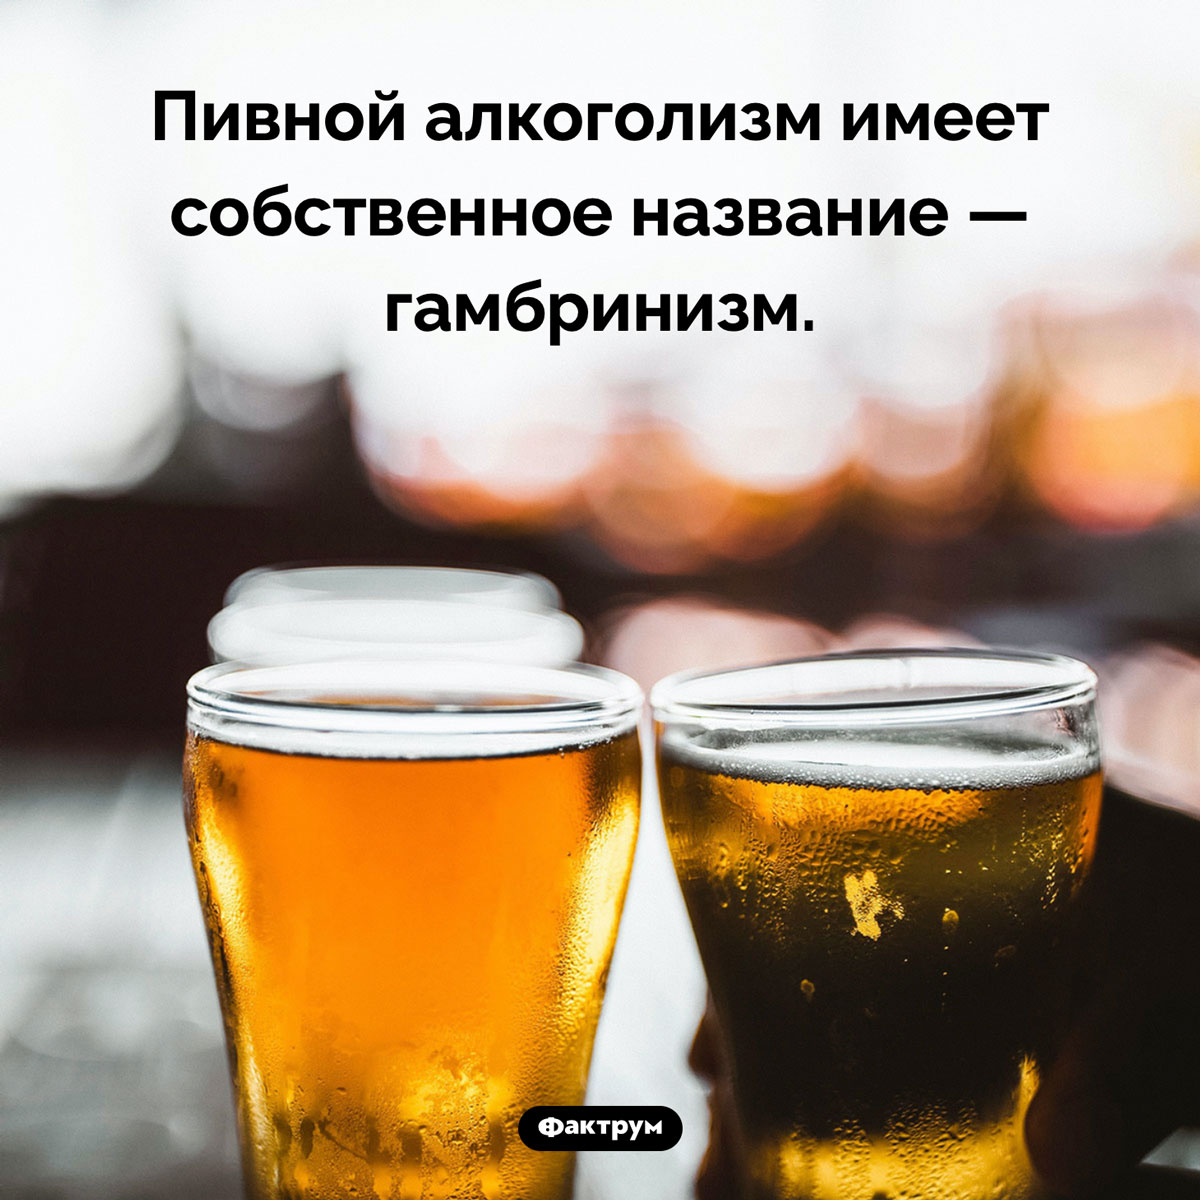 Как называется пивной алкоголизм. Пивной алкоголизм имеет собственное название — гамбринизм.